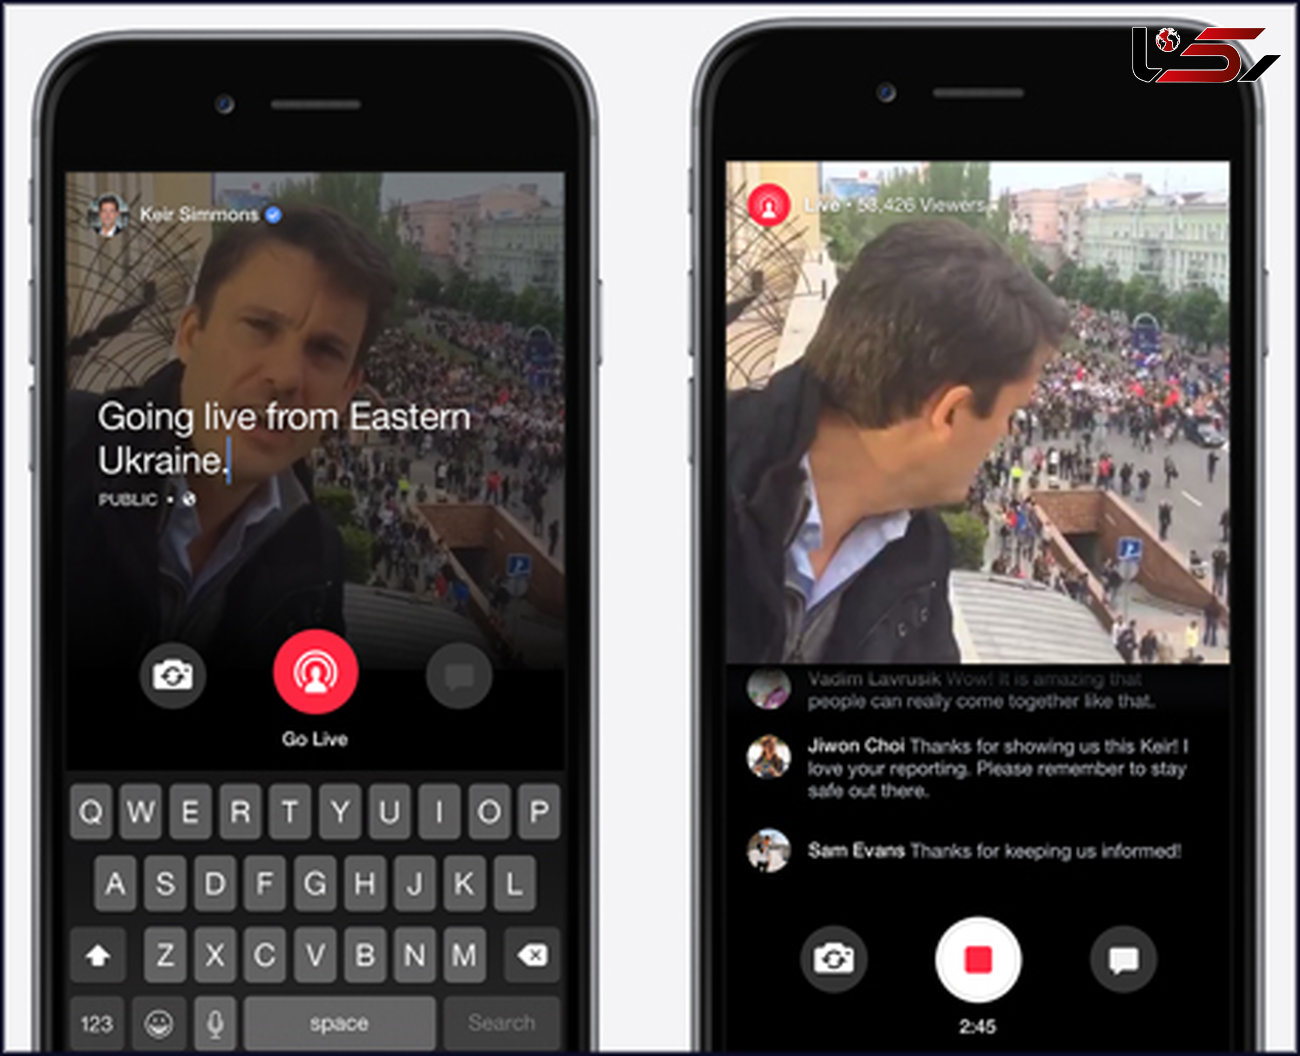 فیسبوک اپلیکیشن جدیدی برای سازندگان ویدیو معرفی کرد